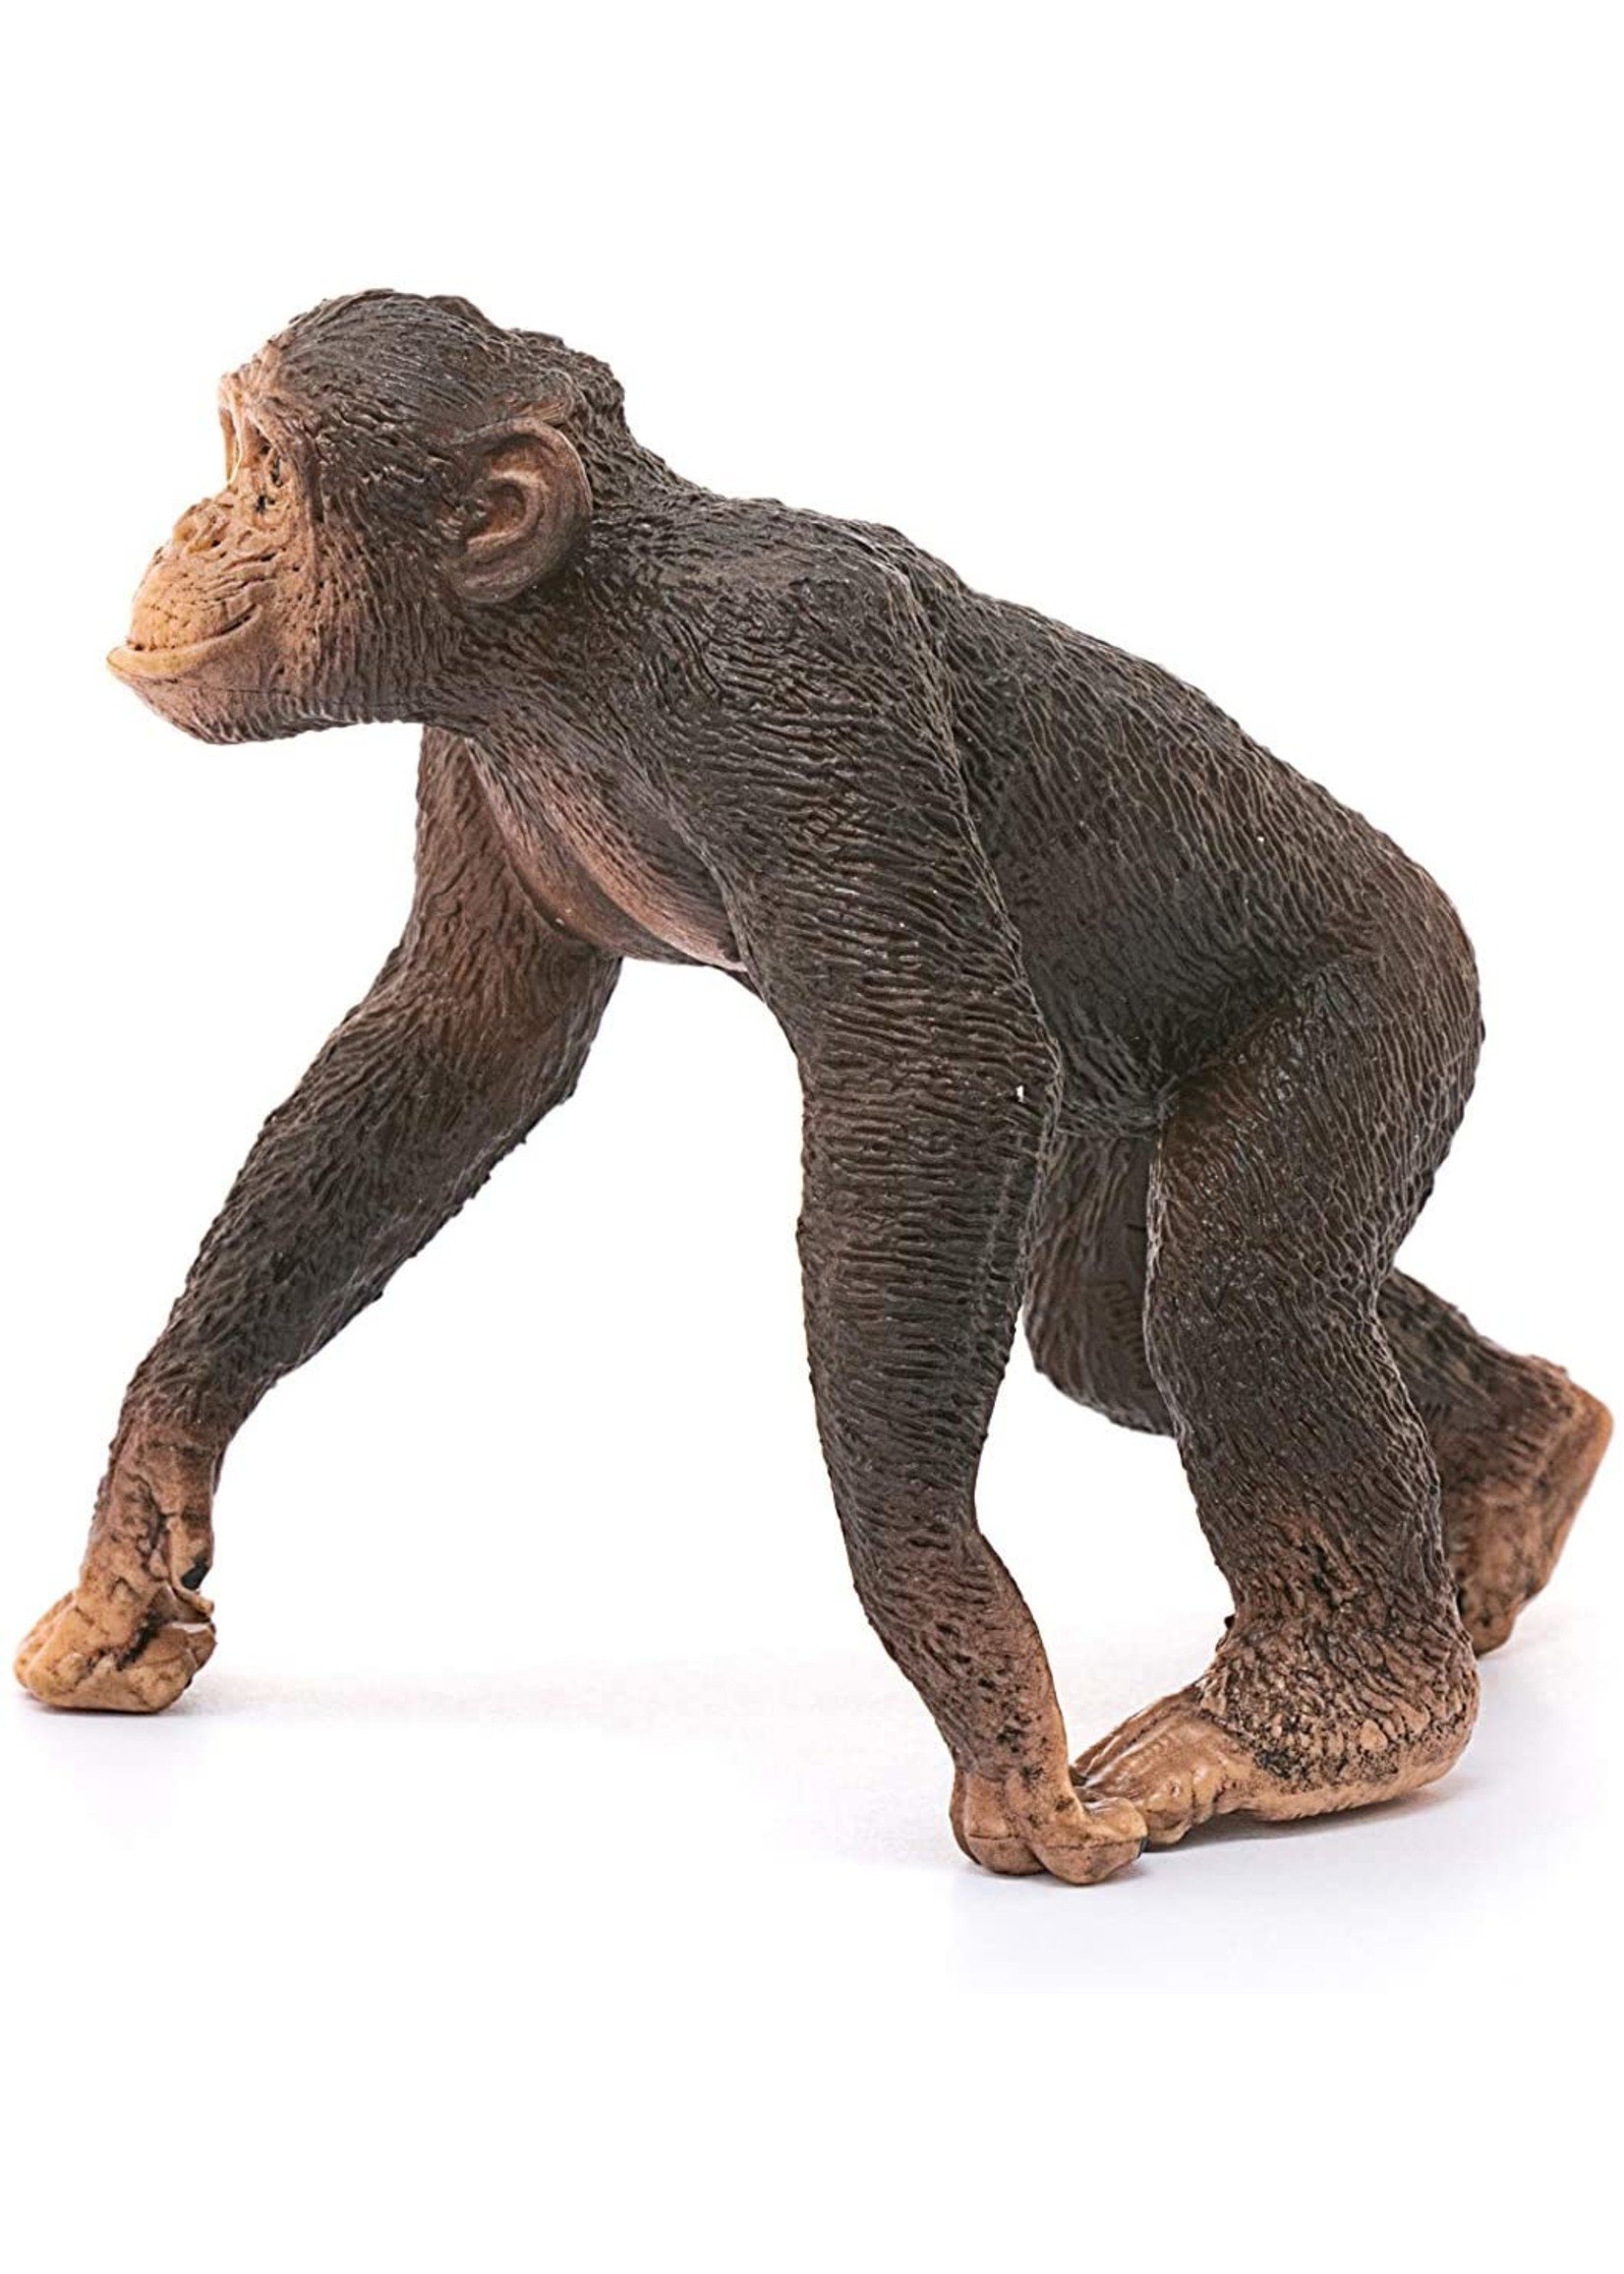 Schleich 14817 - Chimpanzee, Male